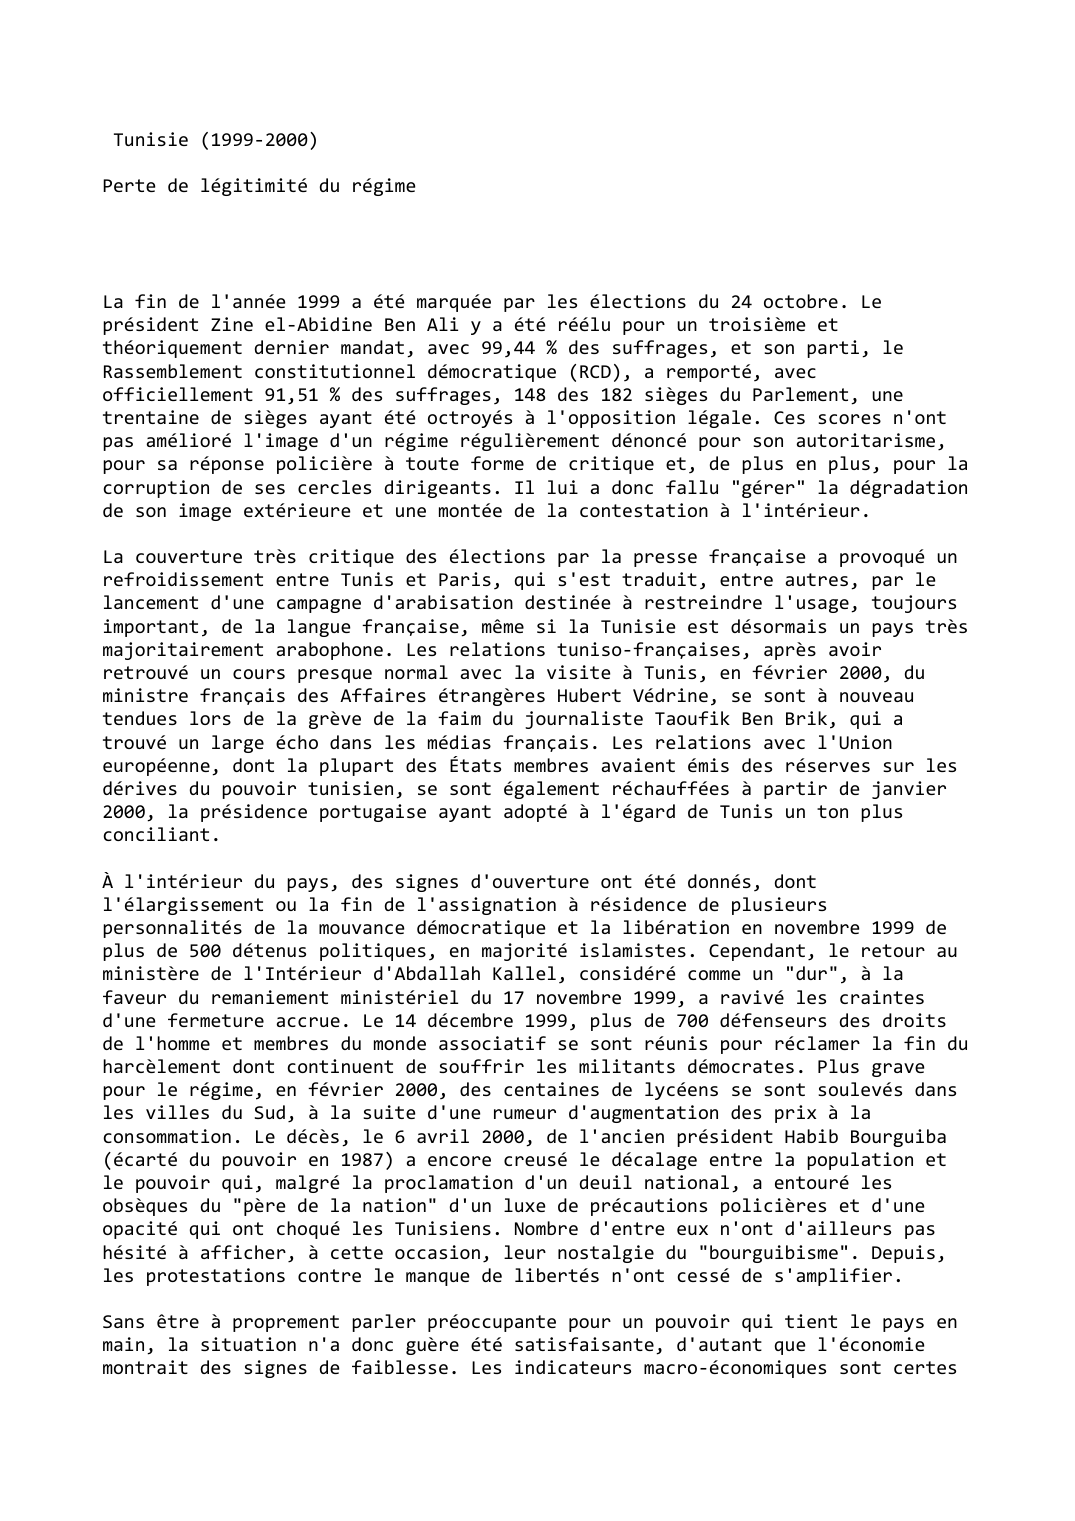 Prévisualisation du document Tunisie (1999-2000)

Perte de légitimité du régime